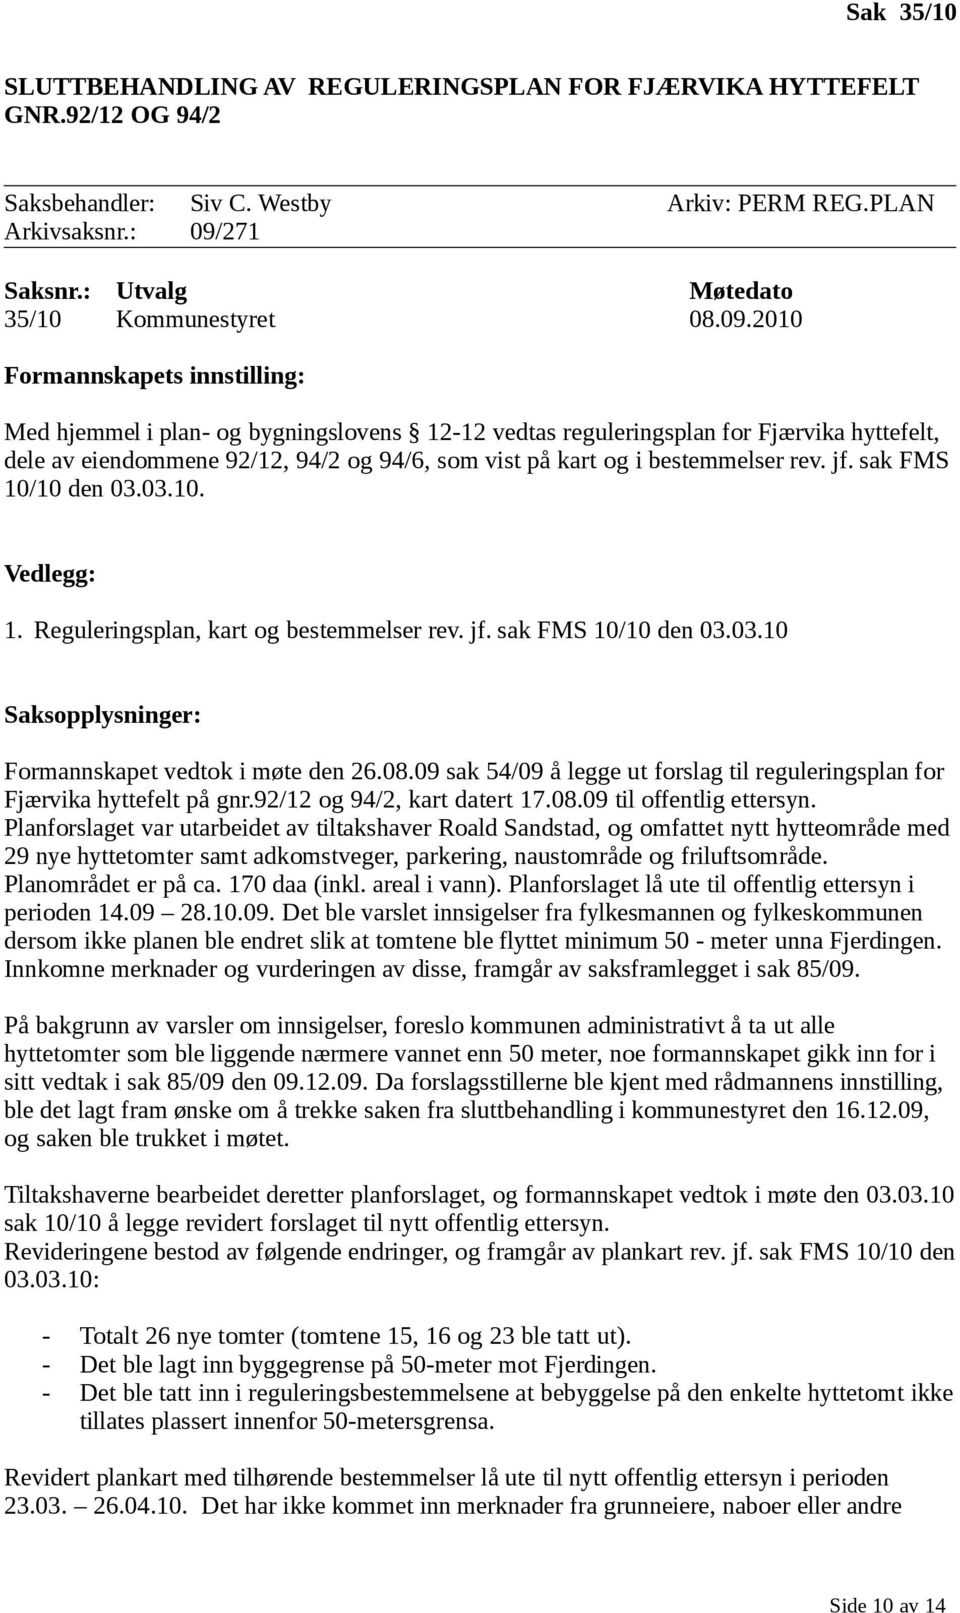 2010 Formannskapets innstilling: Med hjemmel i plan- og bygningslovens 12-12 vedtas reguleringsplan for Fjærvika hyttefelt, dele av eiendommene 92/12, 94/2 og 94/6, som vist på kart og i bestemmelser